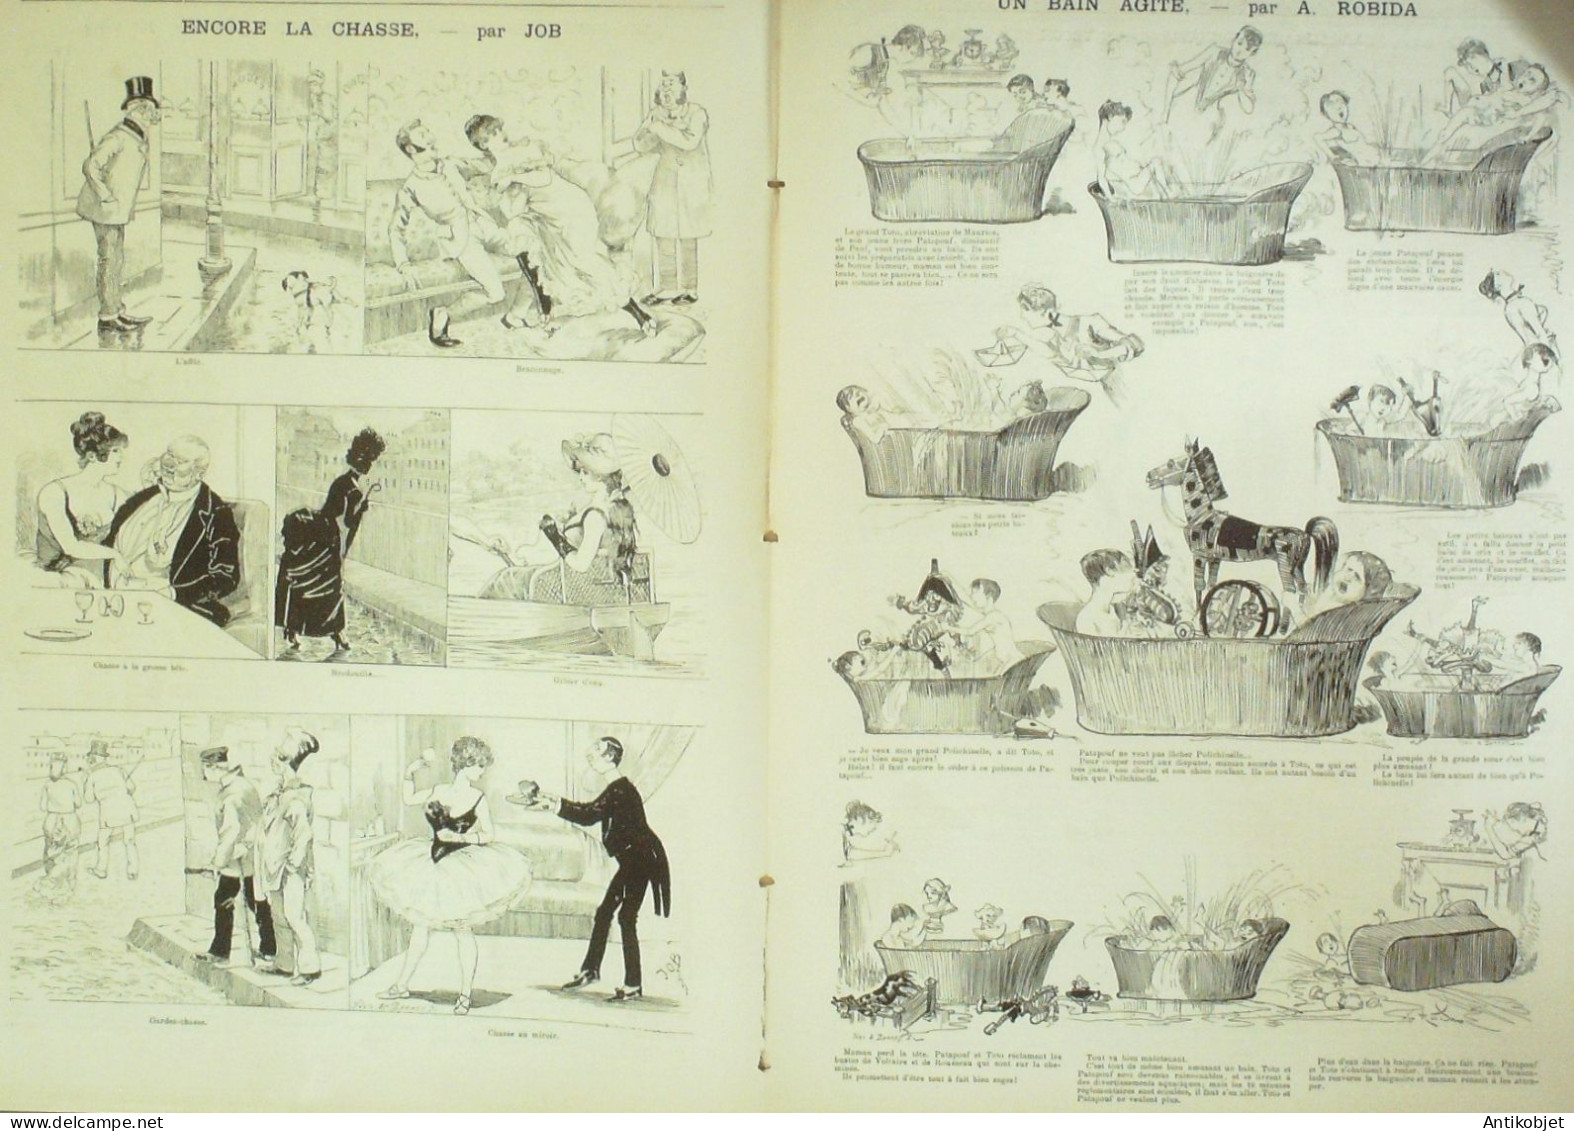 La Caricature 1885 N°299 Réservistes En Manoeuvres Draner Gino Robida Job - Revistas - Antes 1900